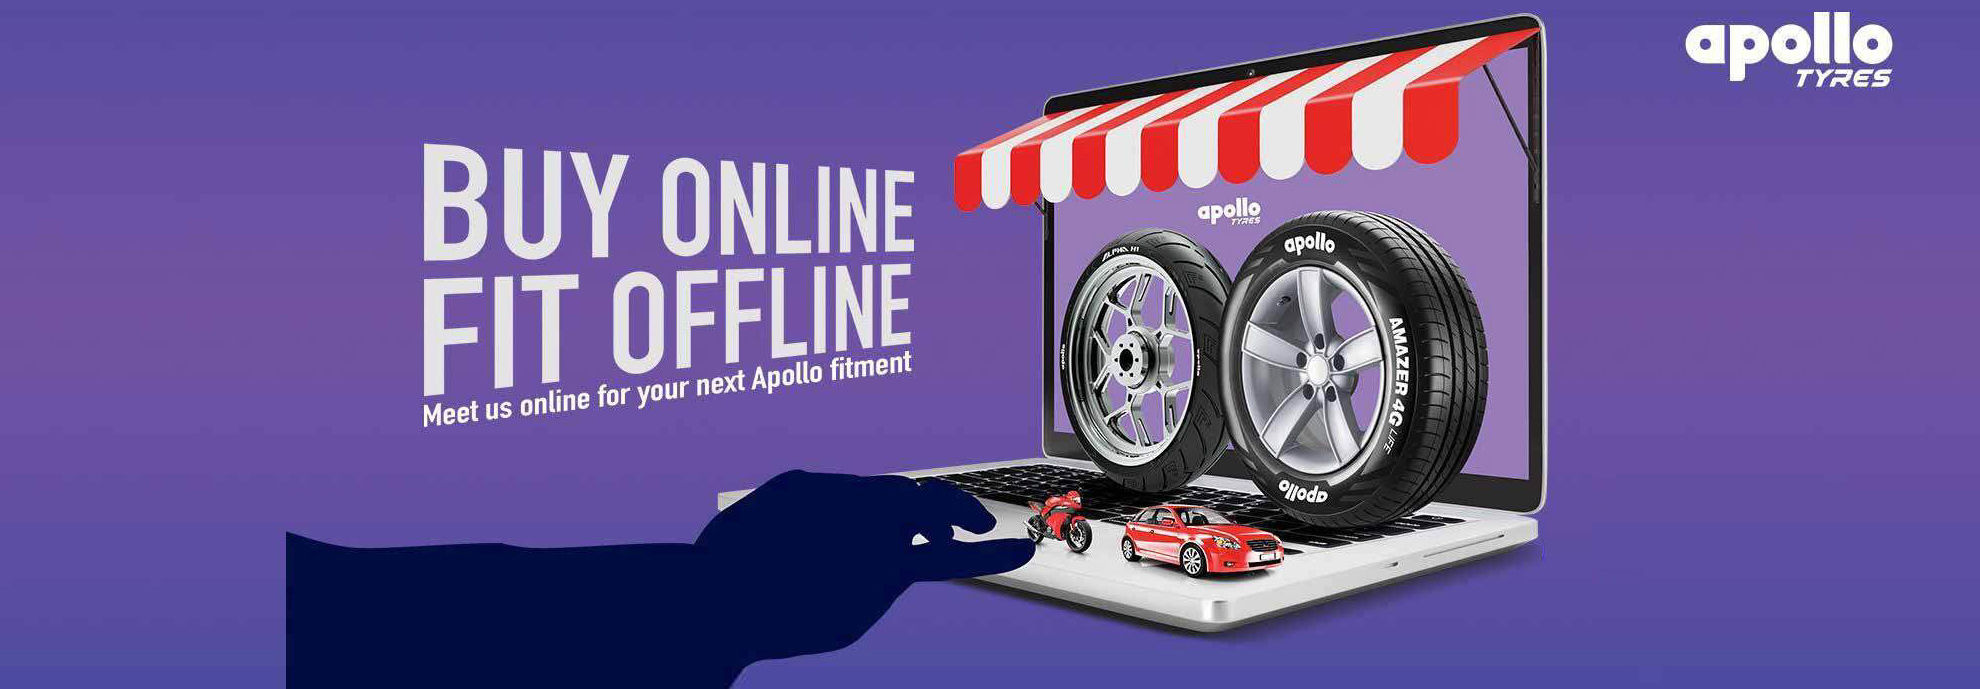 Buy Online fit offline